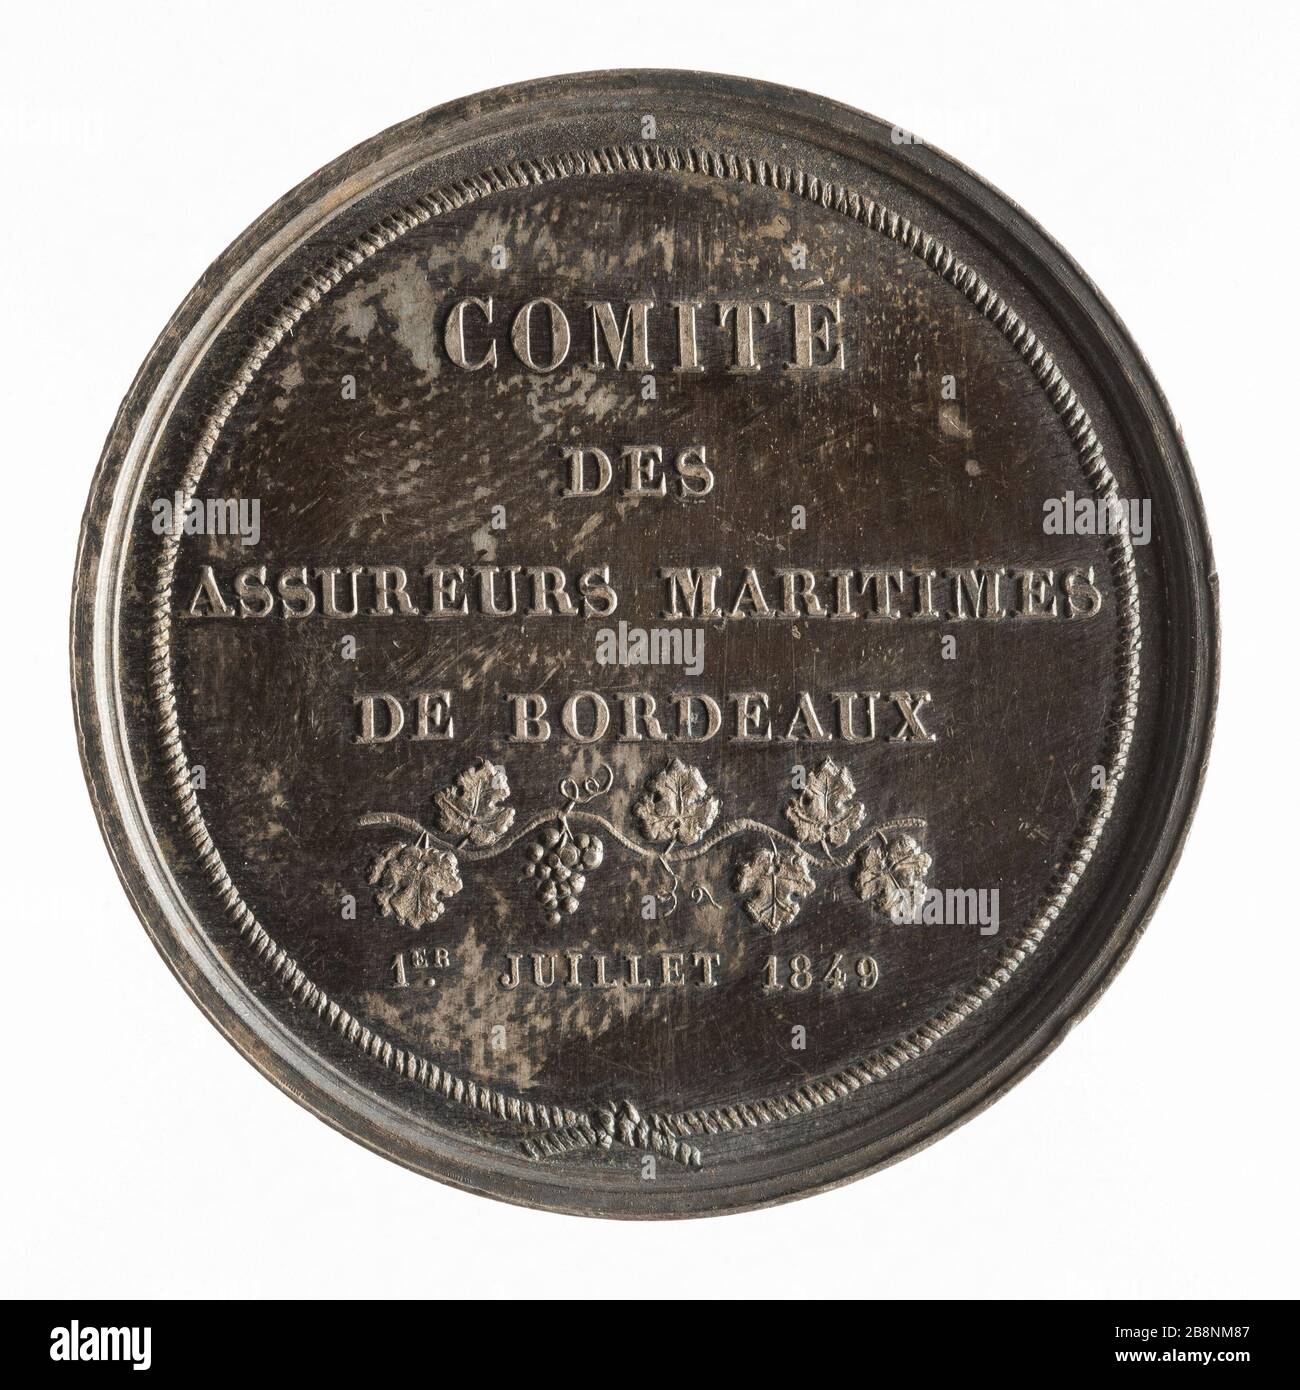 Maritime insurers Committee of Bordeaux, 1 July 1849 Rogat, Emile. 'Comité des assureurs maritimes de Bordeaux, 1er juillet 1849'. Argent. 1849-1849. Paris, musée Carnavalet. Stock Photo